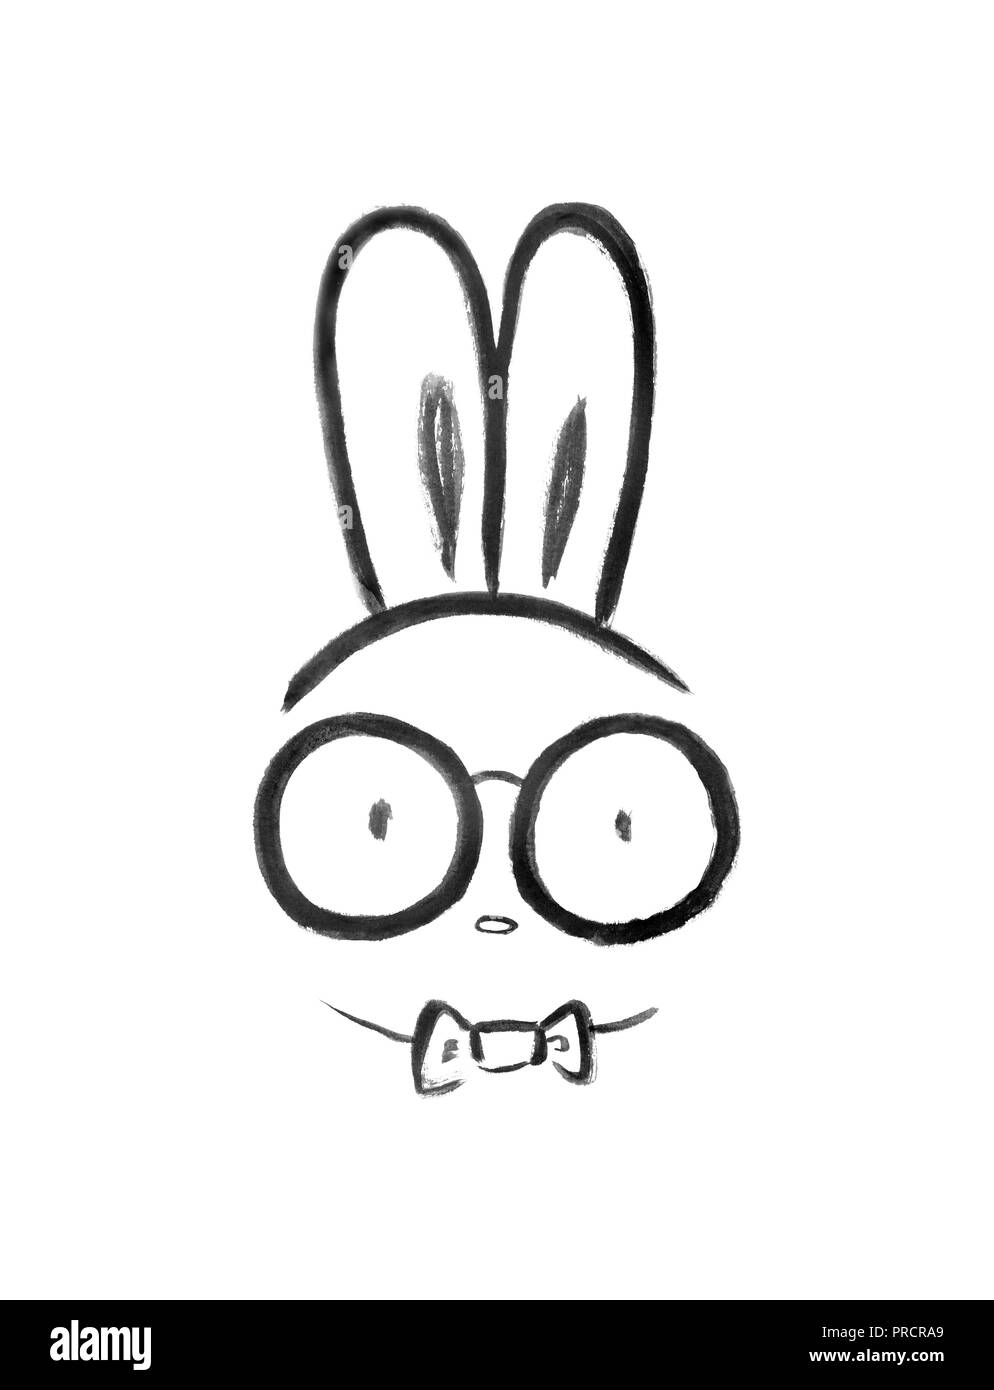 Cute nerd bunny llevaba grandes gafas nerdy y una pajarita. Minimalista estilo kawaii orientales ilustración en blanco y negro, Japonesa Sumi-e ilustraciones es Foto de stock